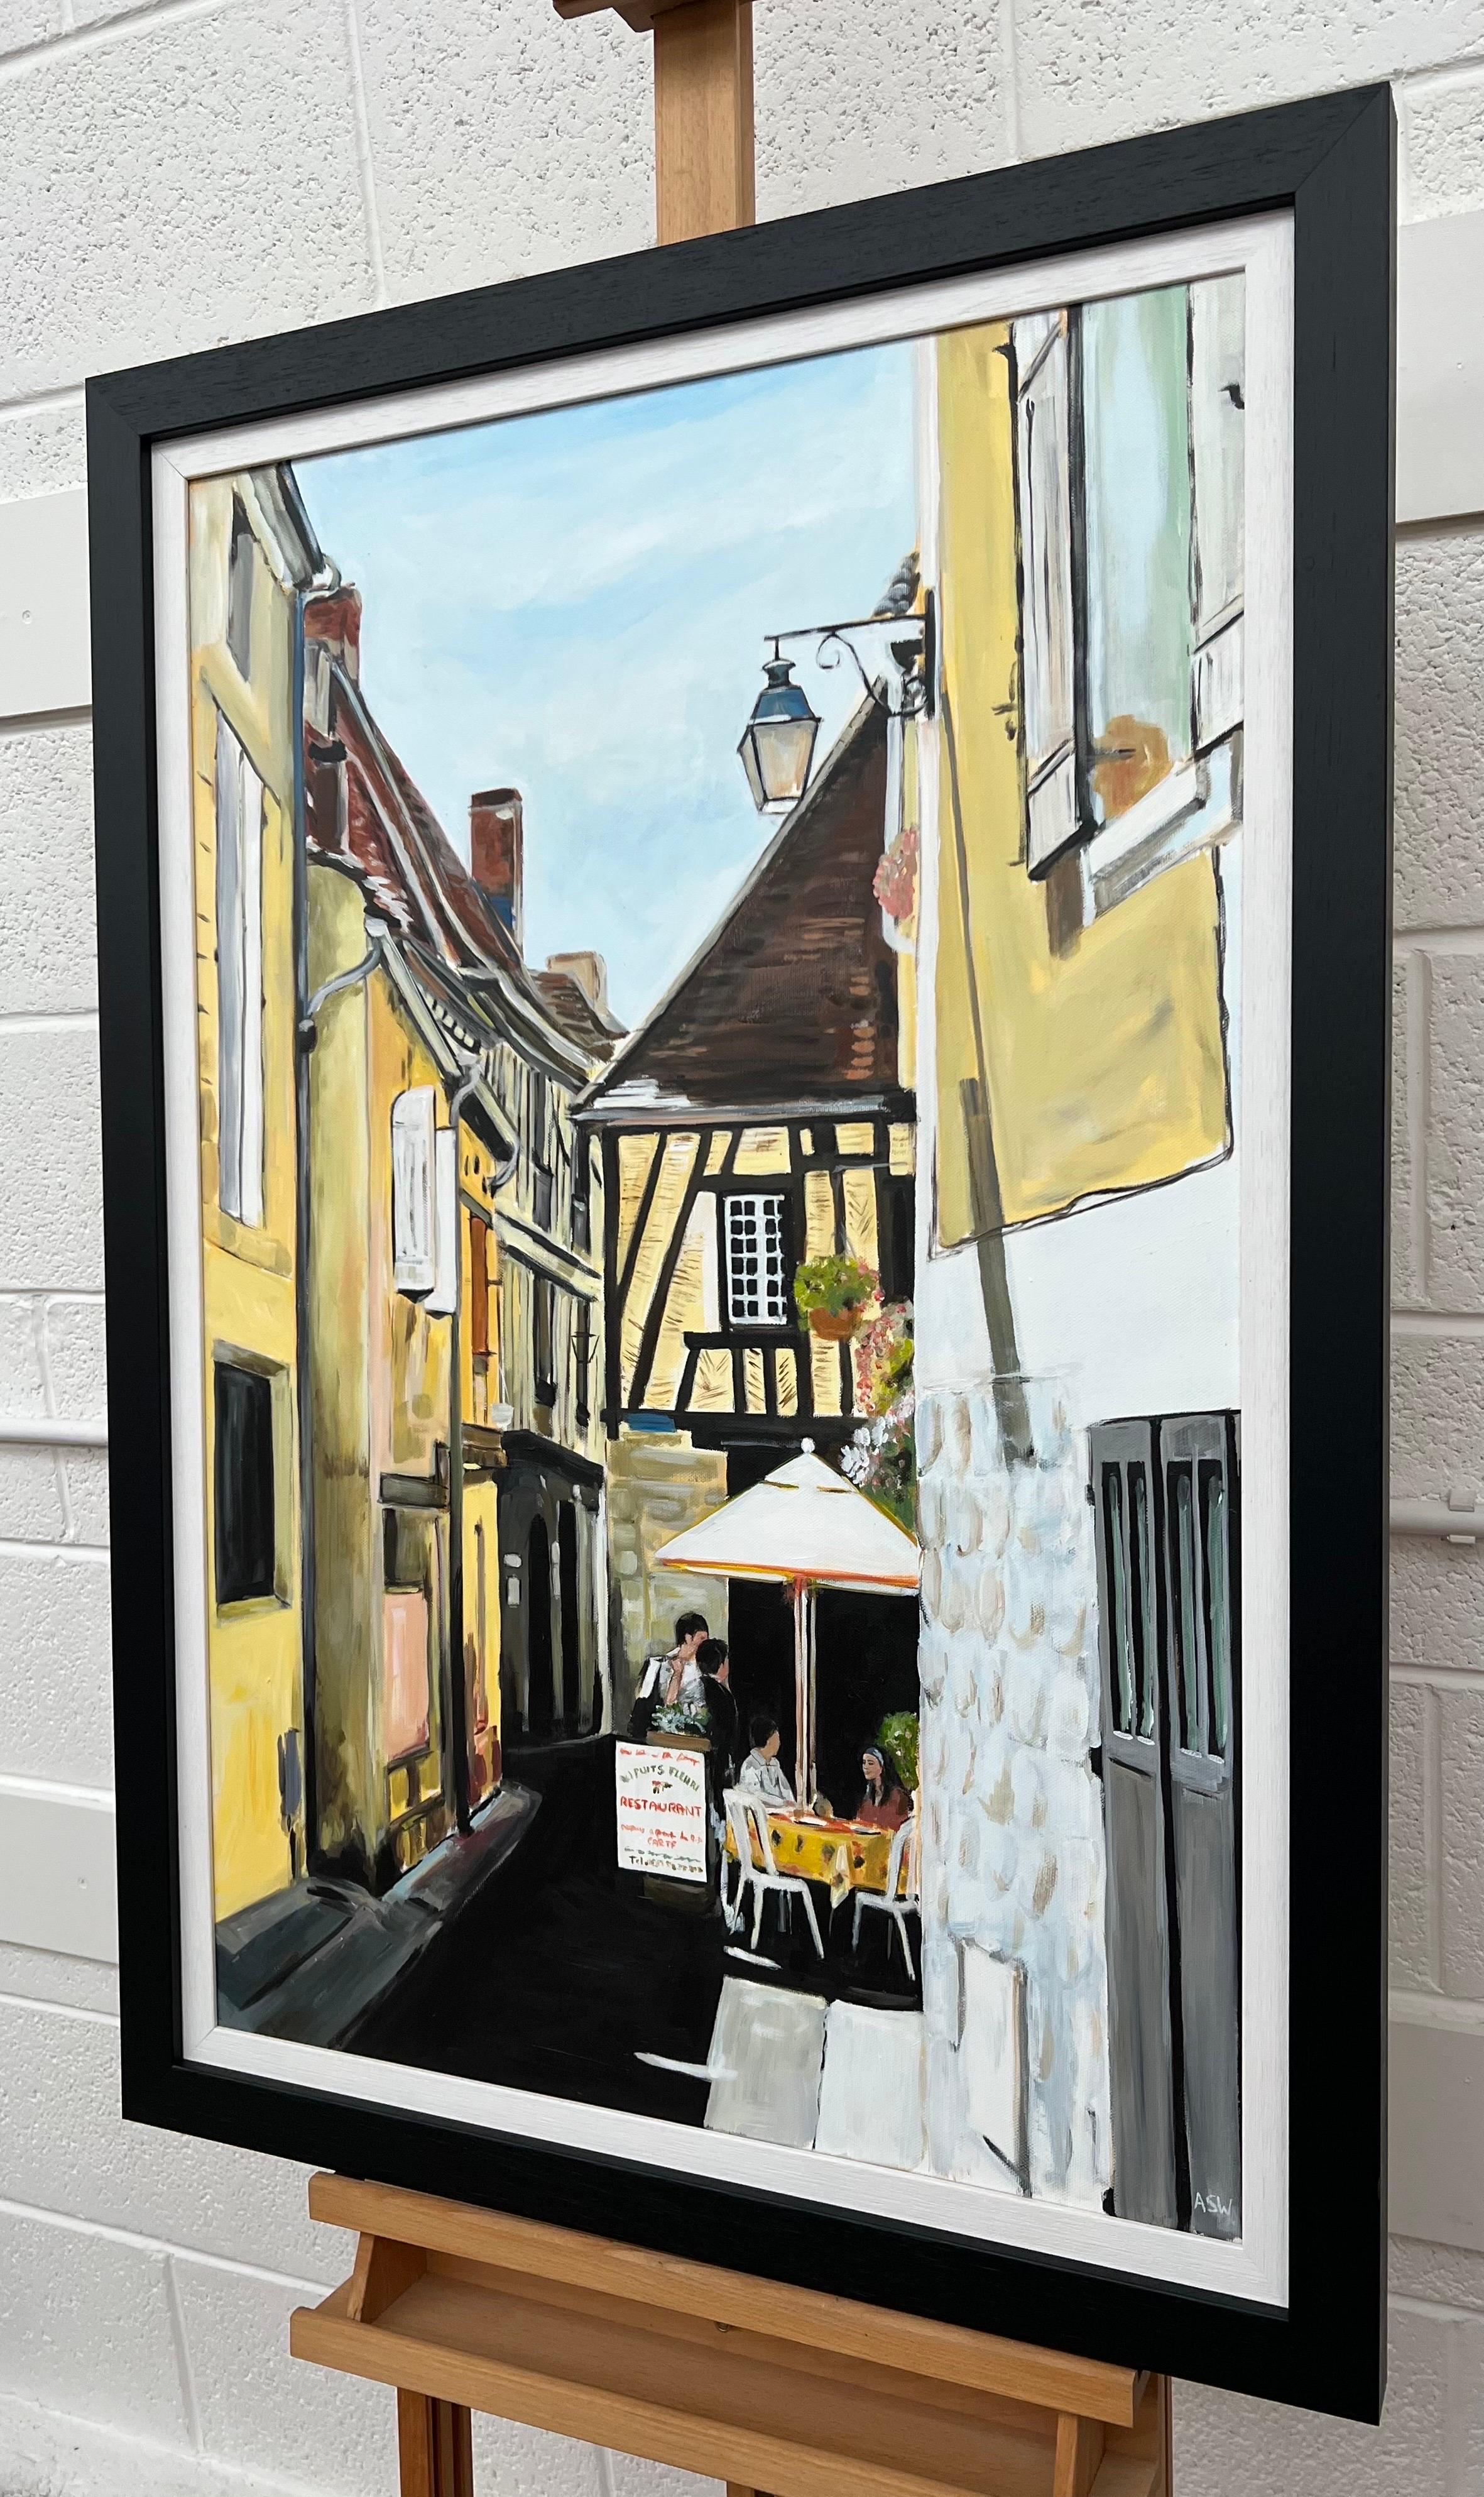 Originalgemälde des Bergerac Cafe in Frankreich von der zeitgenössischen britischen Künstlerin Angela Wakefield. Teil ihrer 2012 veröffentlichten Europäischen Reihe (Nr. 10). Die schöne Altstadt von Bergerac im Südwesten Frankreichs ist bekannt für